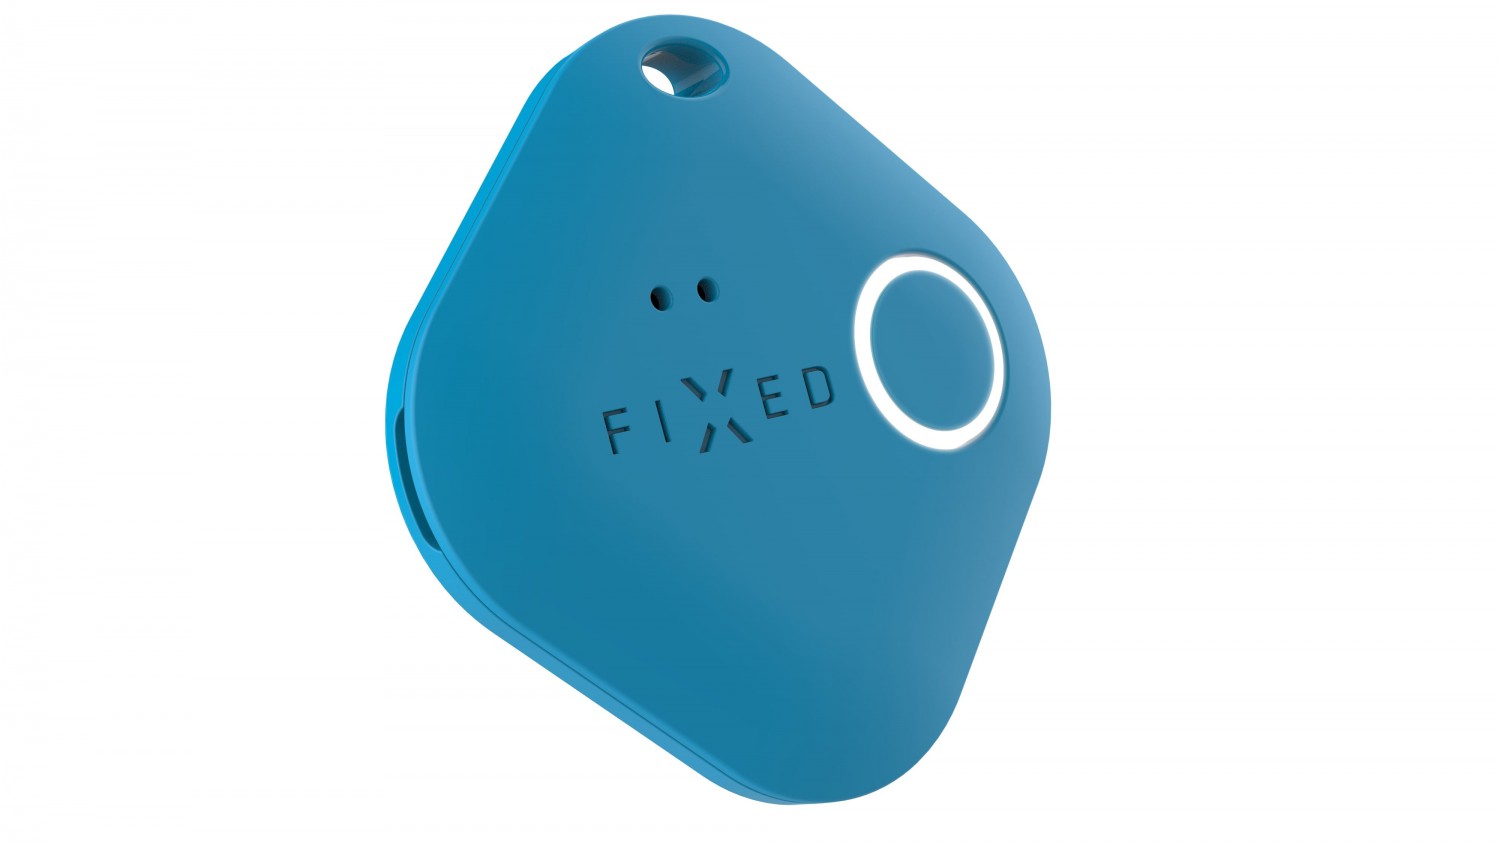 Smart tracker FIXED Smile PRO, Duo Pack - modrý + červený